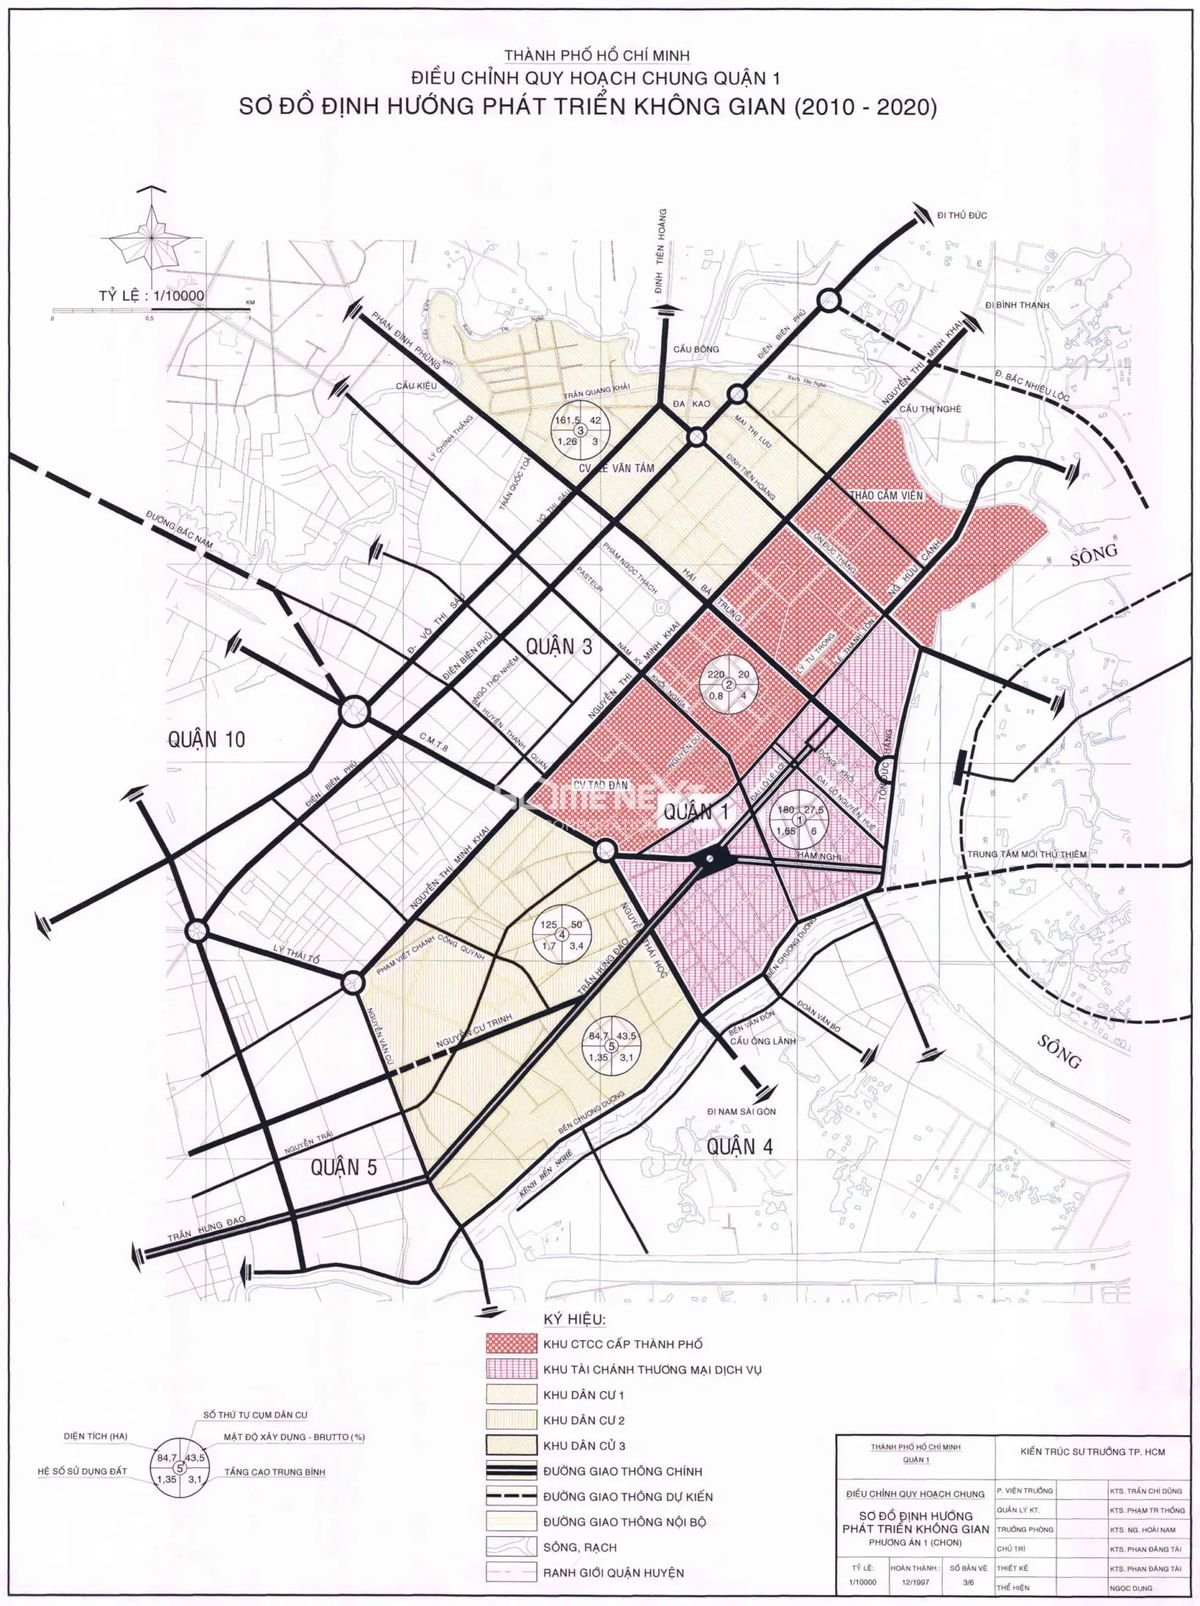 Cập nhật bản đồ Quận 1 TP.HCM đầy đủ, chính xác và bao gồm các thông tin mới nhất về các tuyến đường, công trình xây dựng, điểm du lịch, mua sắm, ẩm thực,... giúp bạn dễ dàng lưu thông và khám phá địa phương ngay tại trung tâm Sài Gòn Số 1.